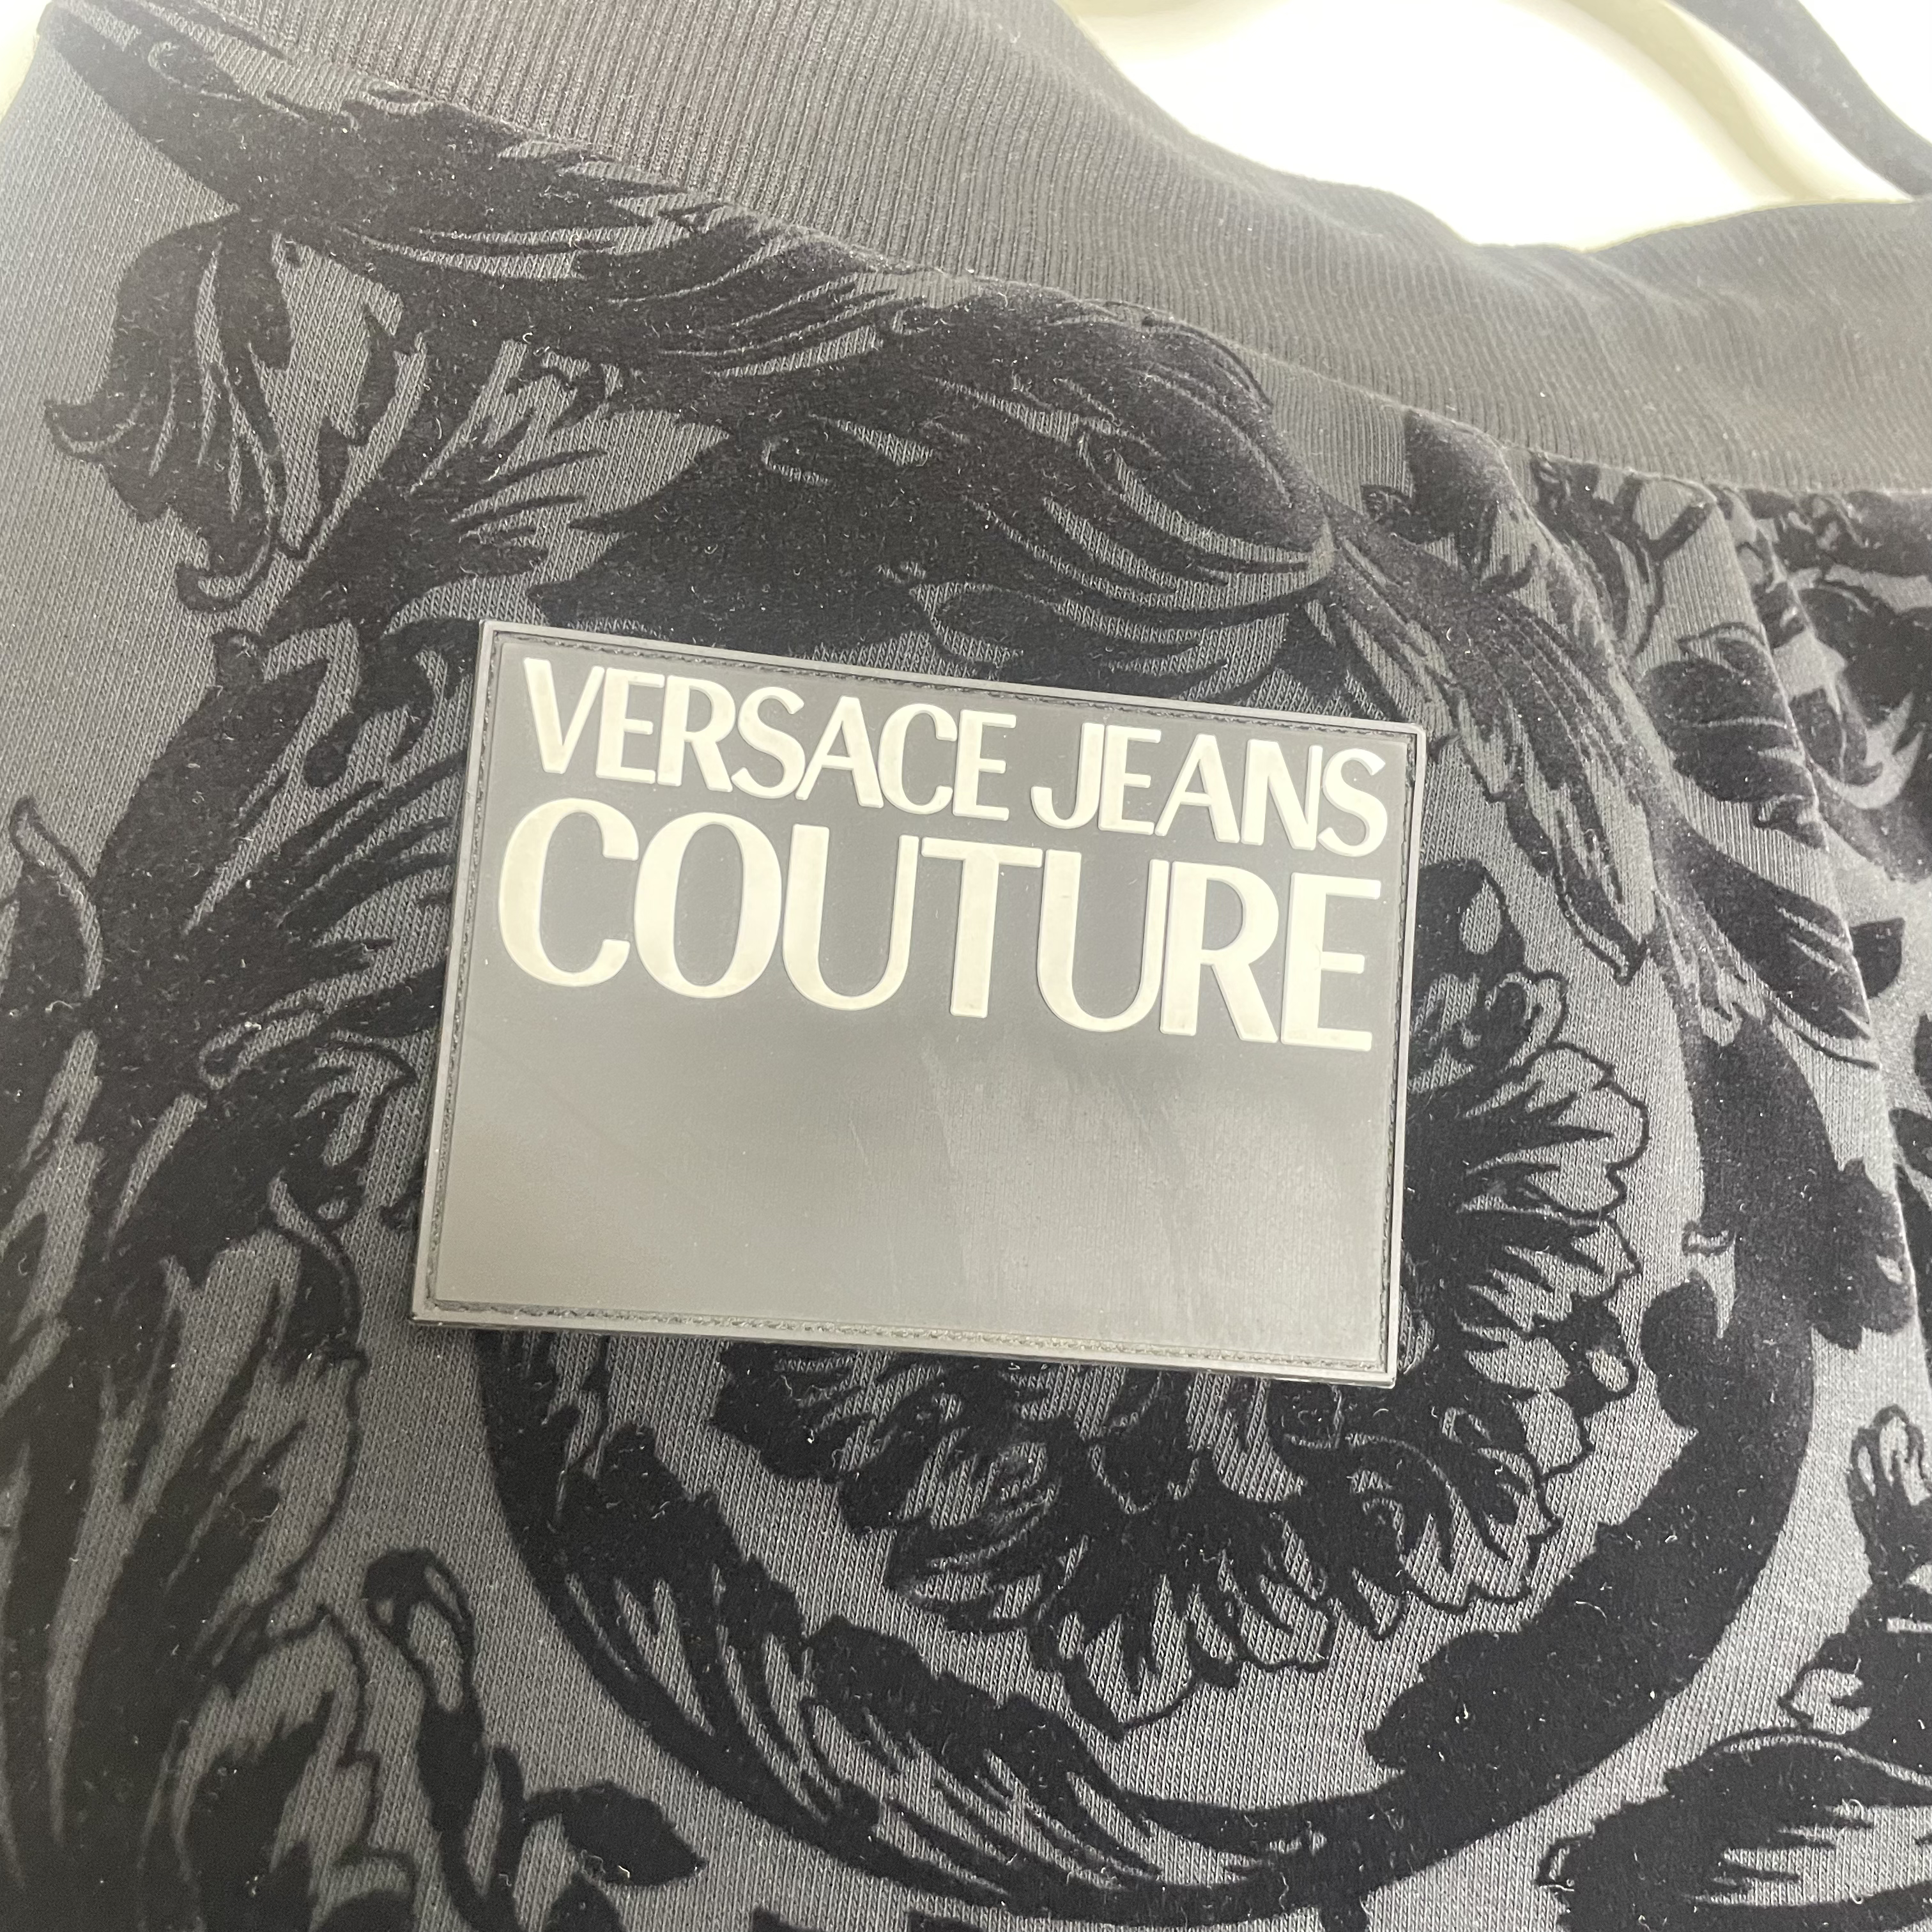 Versace Bukser, Jeans Couture 'Velour' Herre Jogging Bukser (S)